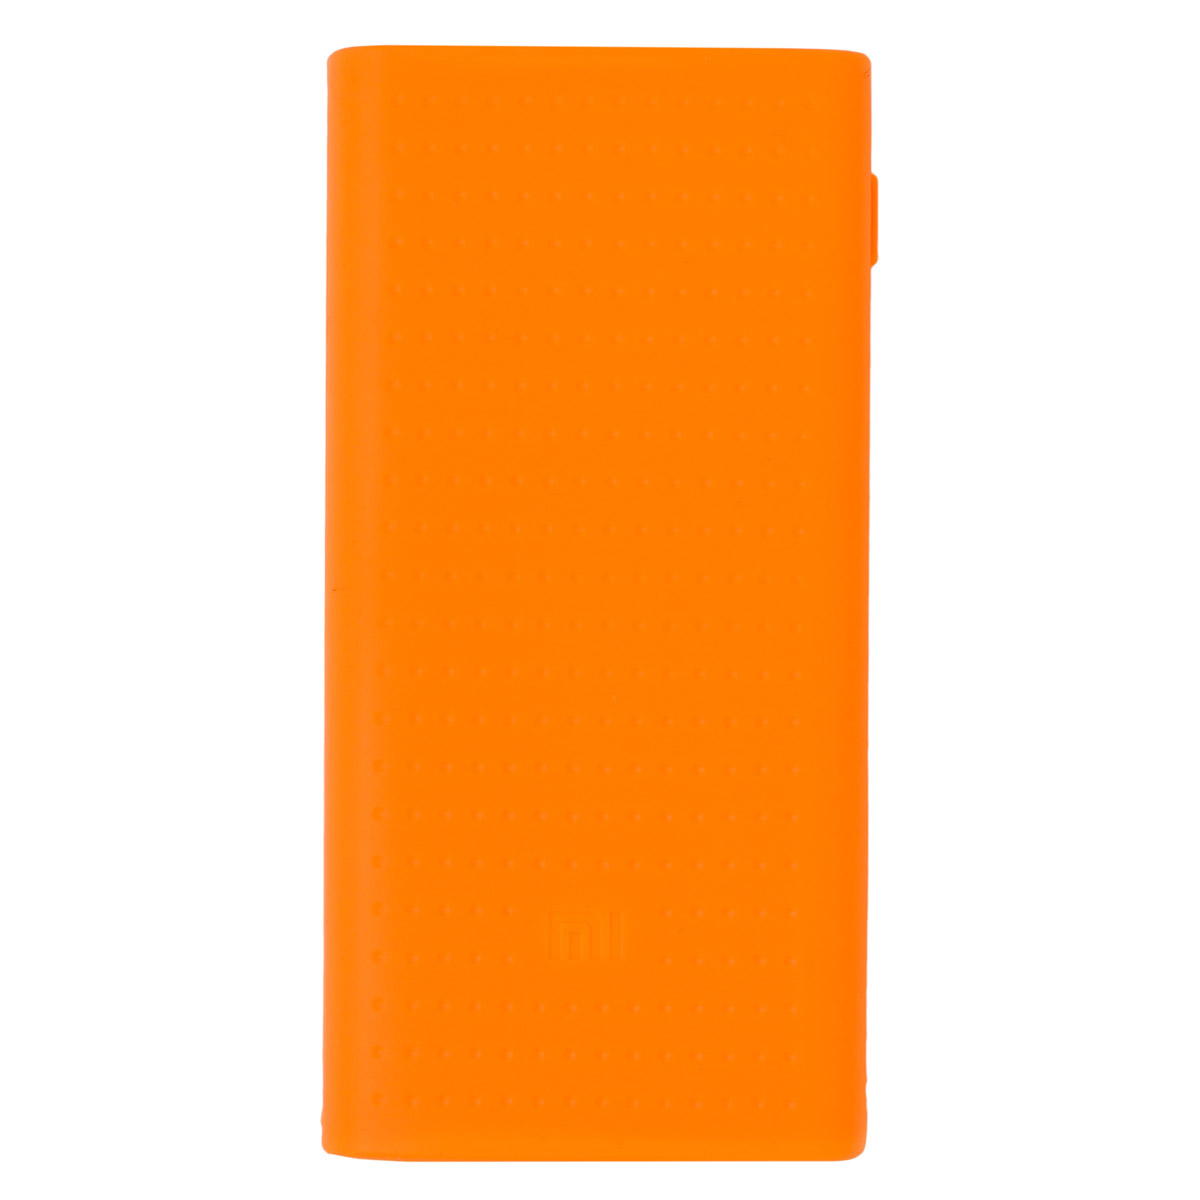 Силиконовый чехол для Mi Power Bank 2 20000 мAч (Оранжевый) разборный силиконовый подсачек lucky john